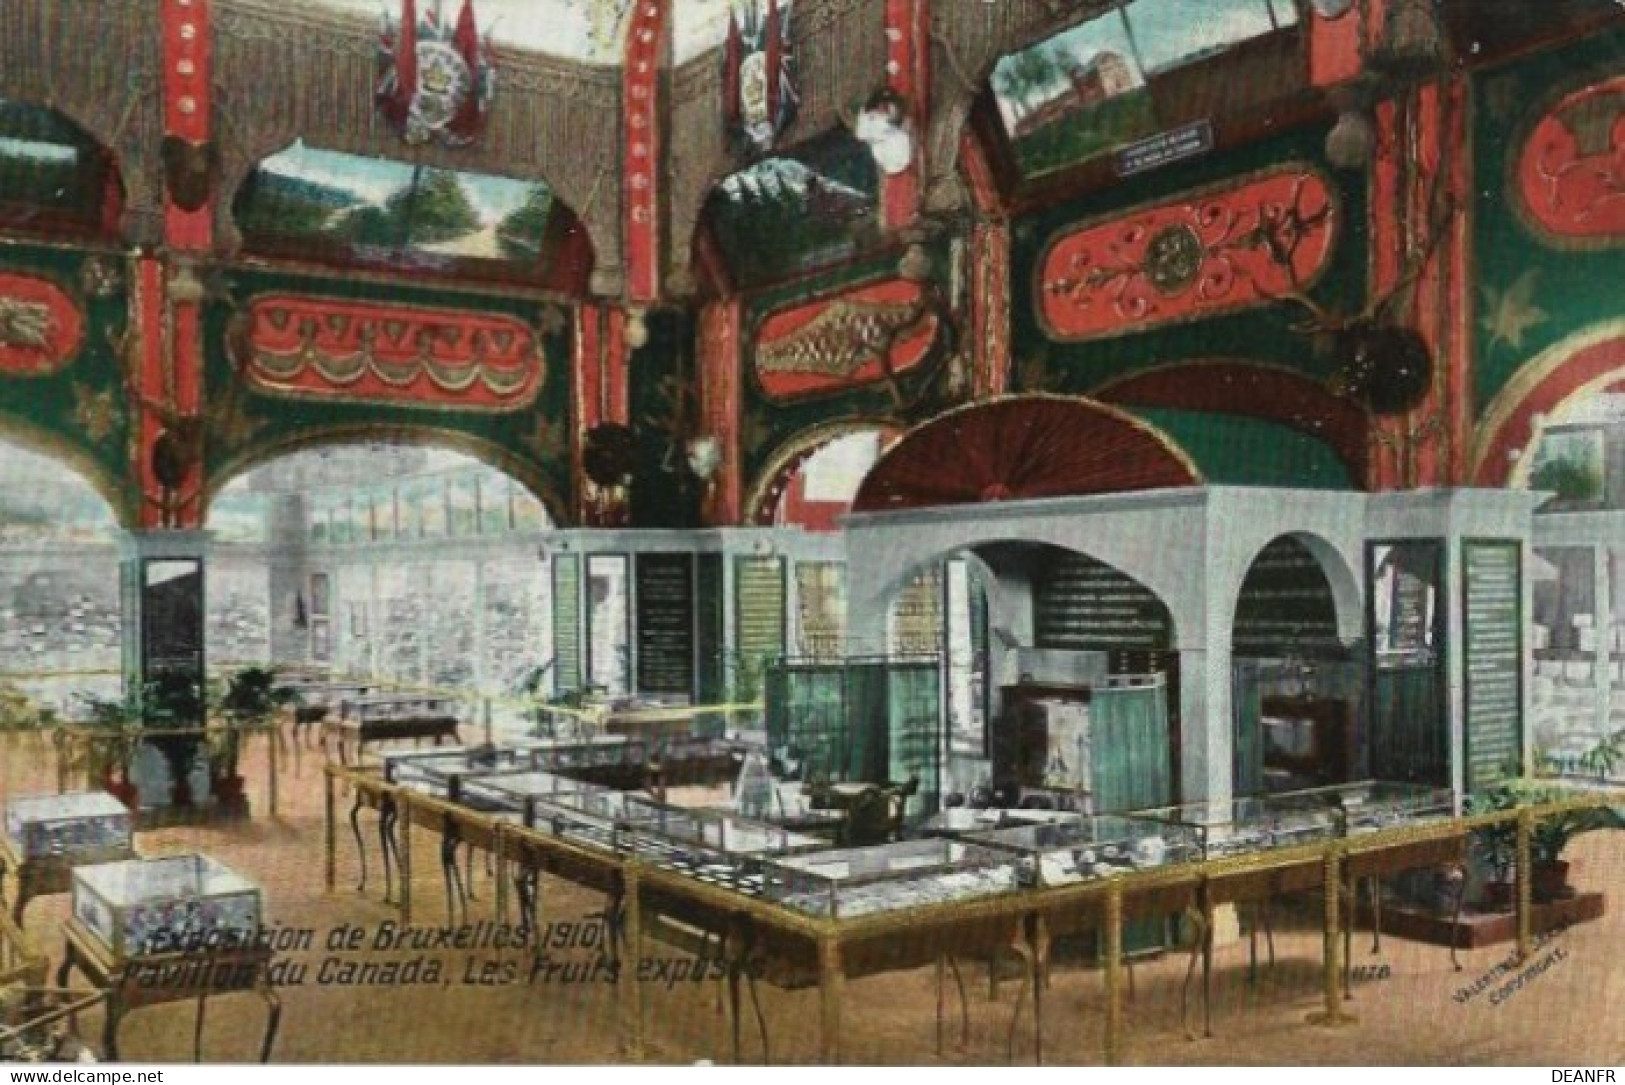 EXPOSITION De BRUXELLES 1910 : Pavillon Canada,Les Fruits Exposés. Carte Impeccable. - Exposiciones Universales